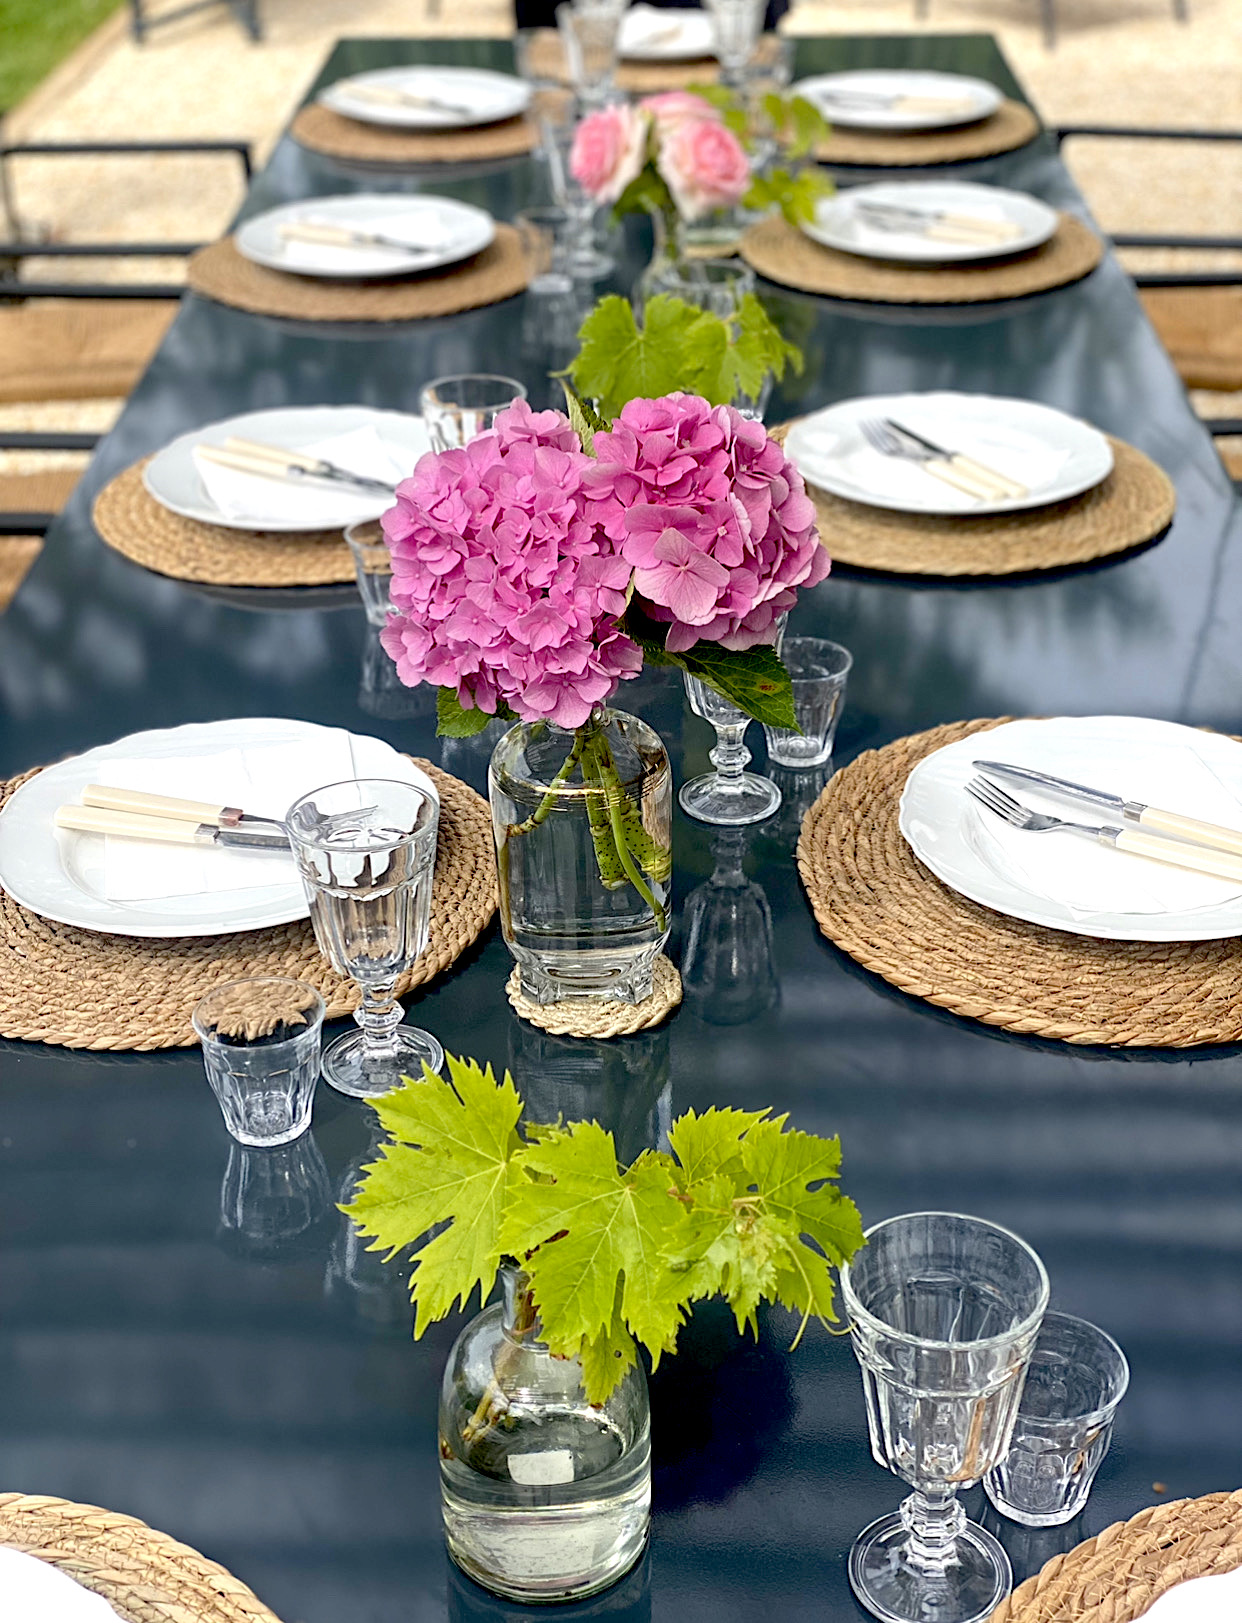 Table de la Pergola avec des fleurs et des vignes